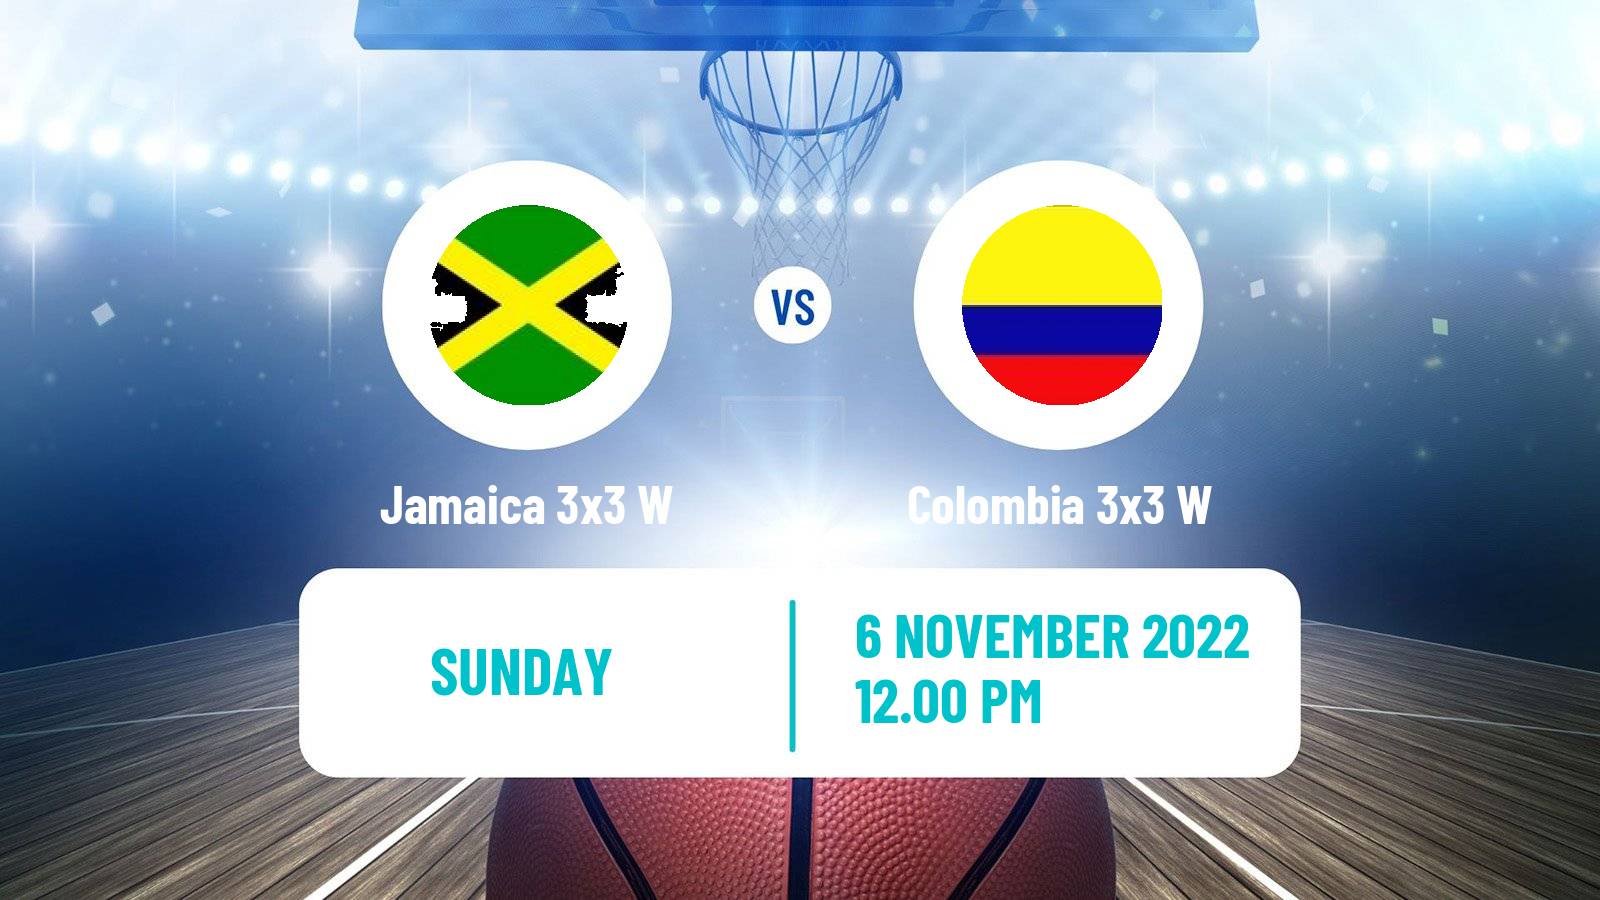 Basketball Americup 3x3 Women Jamaica 3x3 W - Colombia 3x3 W